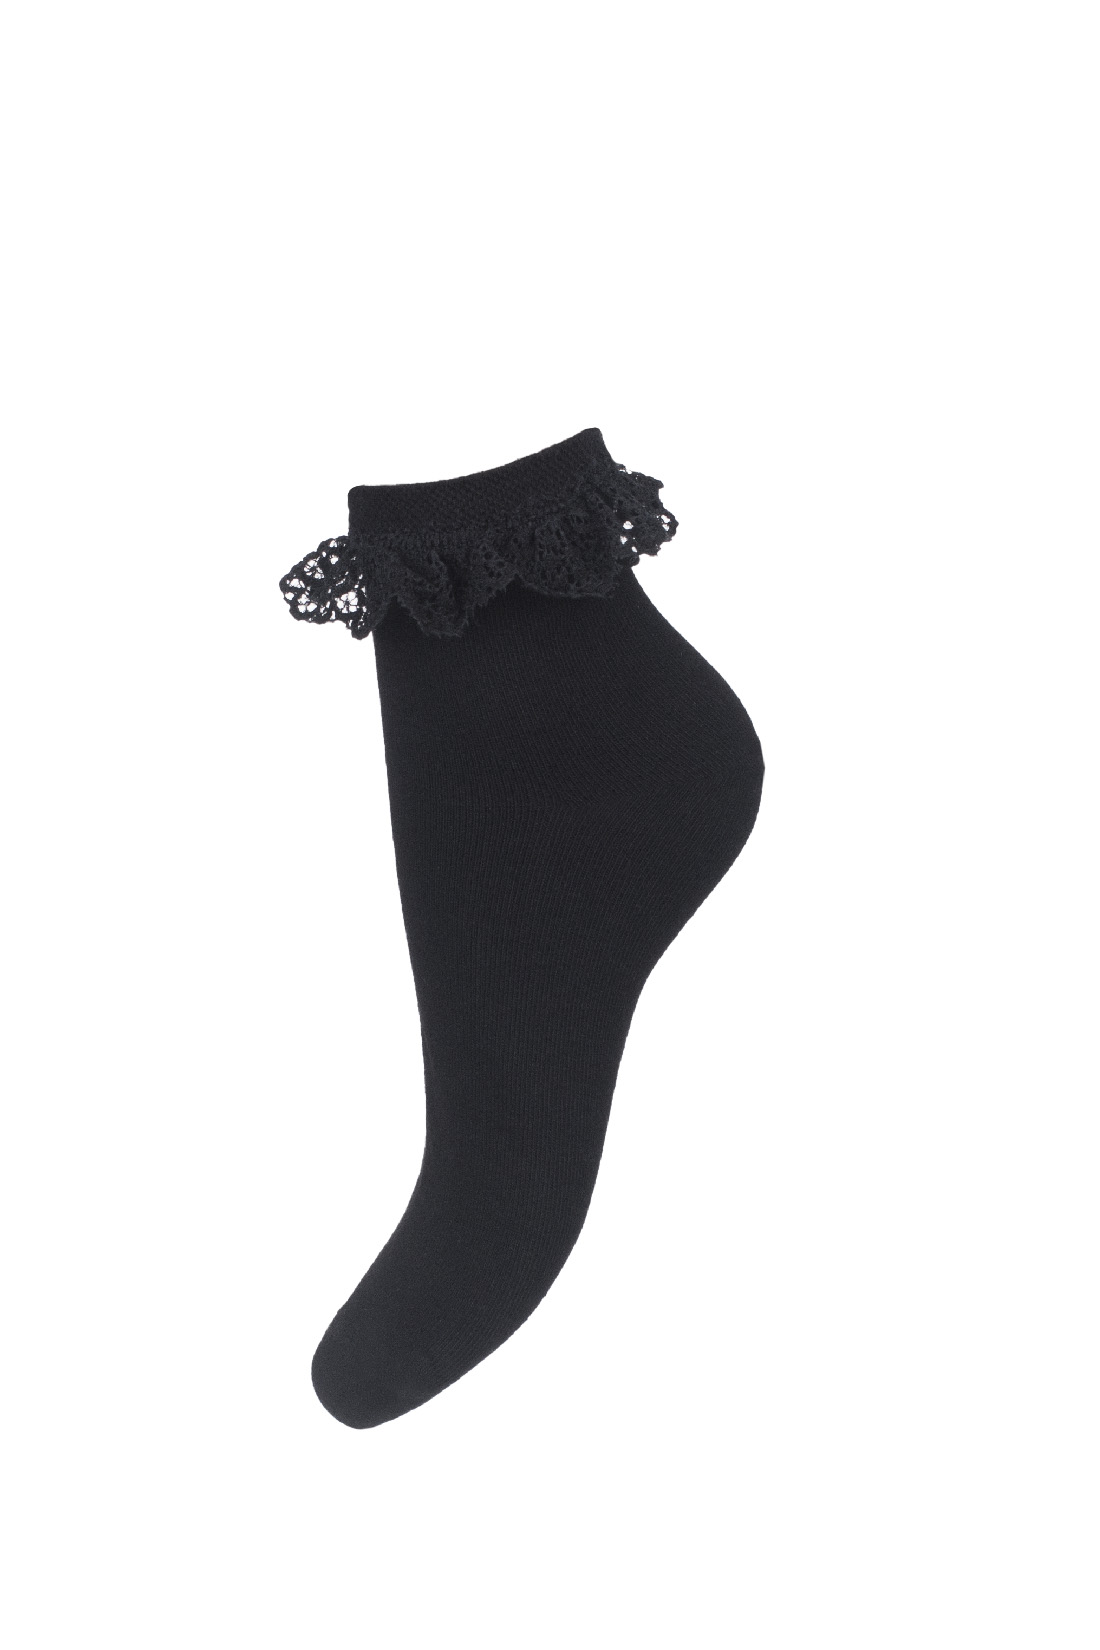 Skarpetki bawełniane damskie w kolorze czarnym z czarną koronką przy ściągaczu